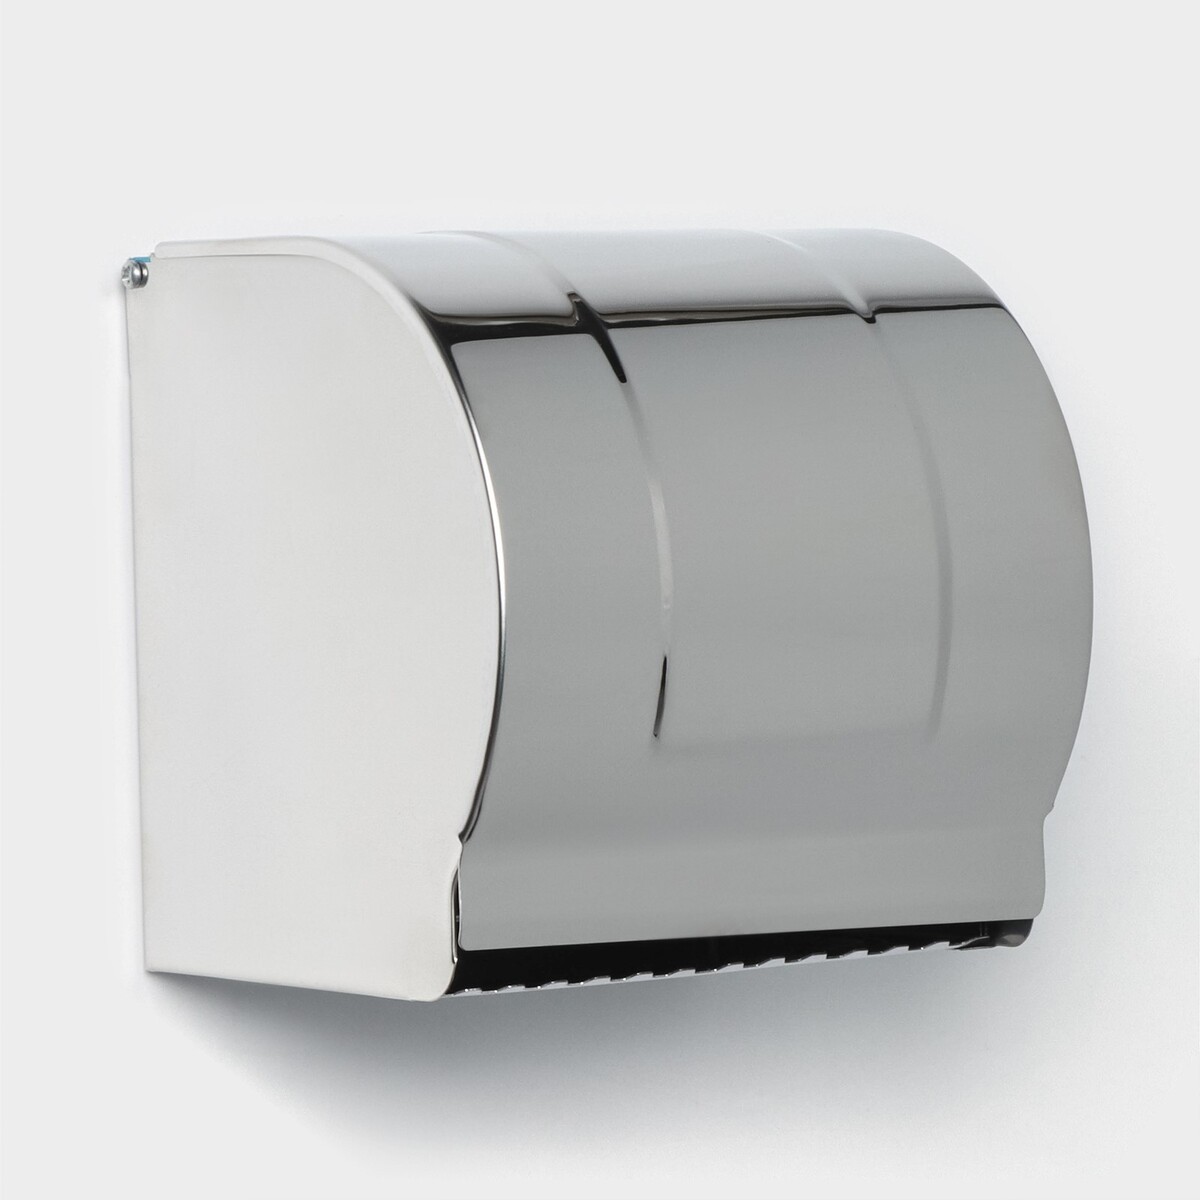 Держатель для туалетной бумаги, без втулки 12×12,5×12 см, цвет хром зеркальный держатель для туалетной бумаги металл хром frap f1903 3